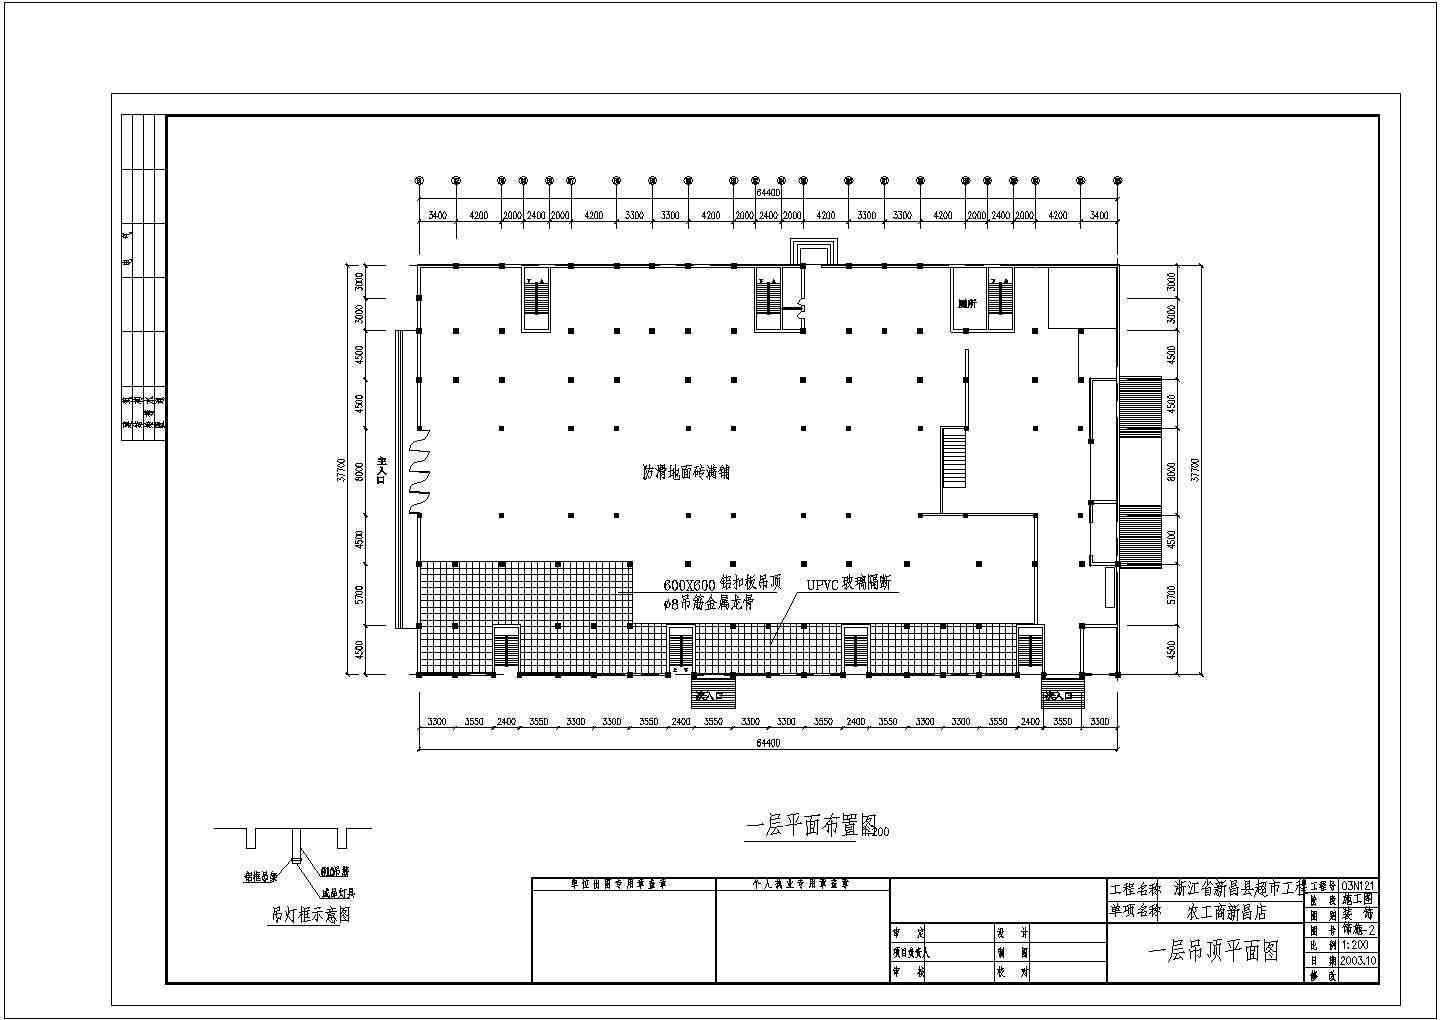 比较详细的新昌超市建筑平面布置图